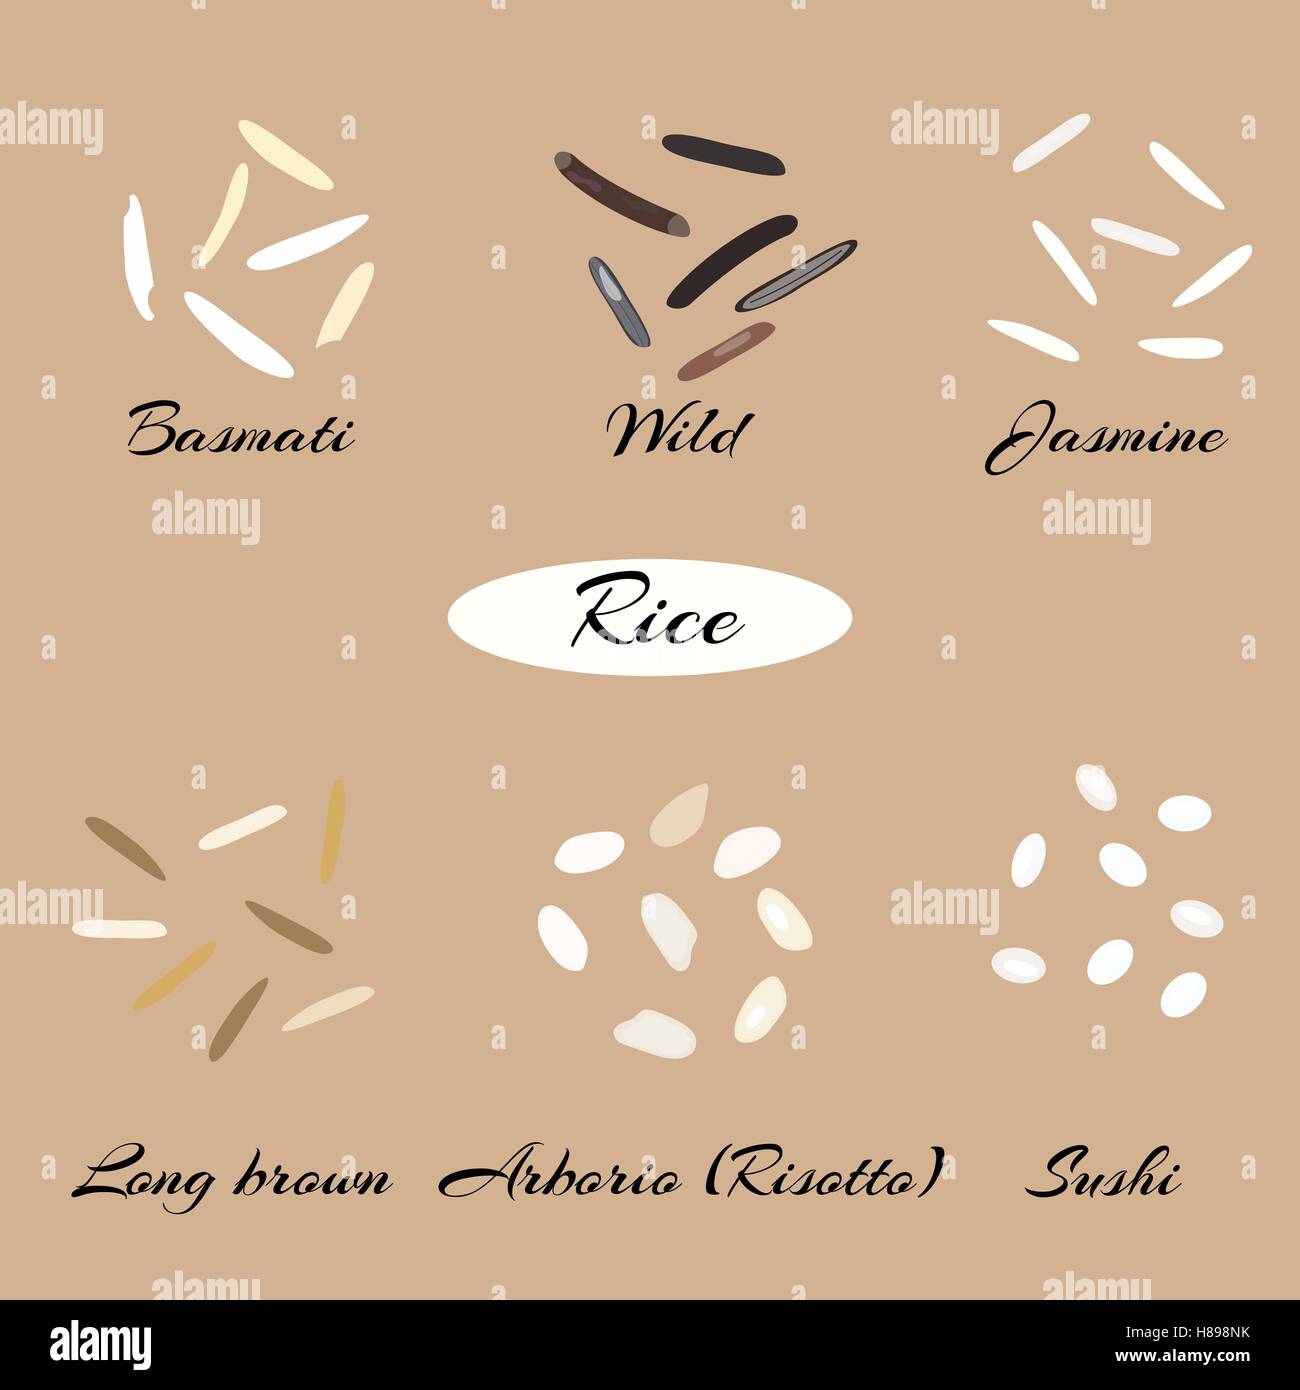 Différents types de riz Basmati, jasmin, sauvages, long, brun, arborio sushi. Macro. Illustration vecteur EPS 10. Illustration de Vecteur